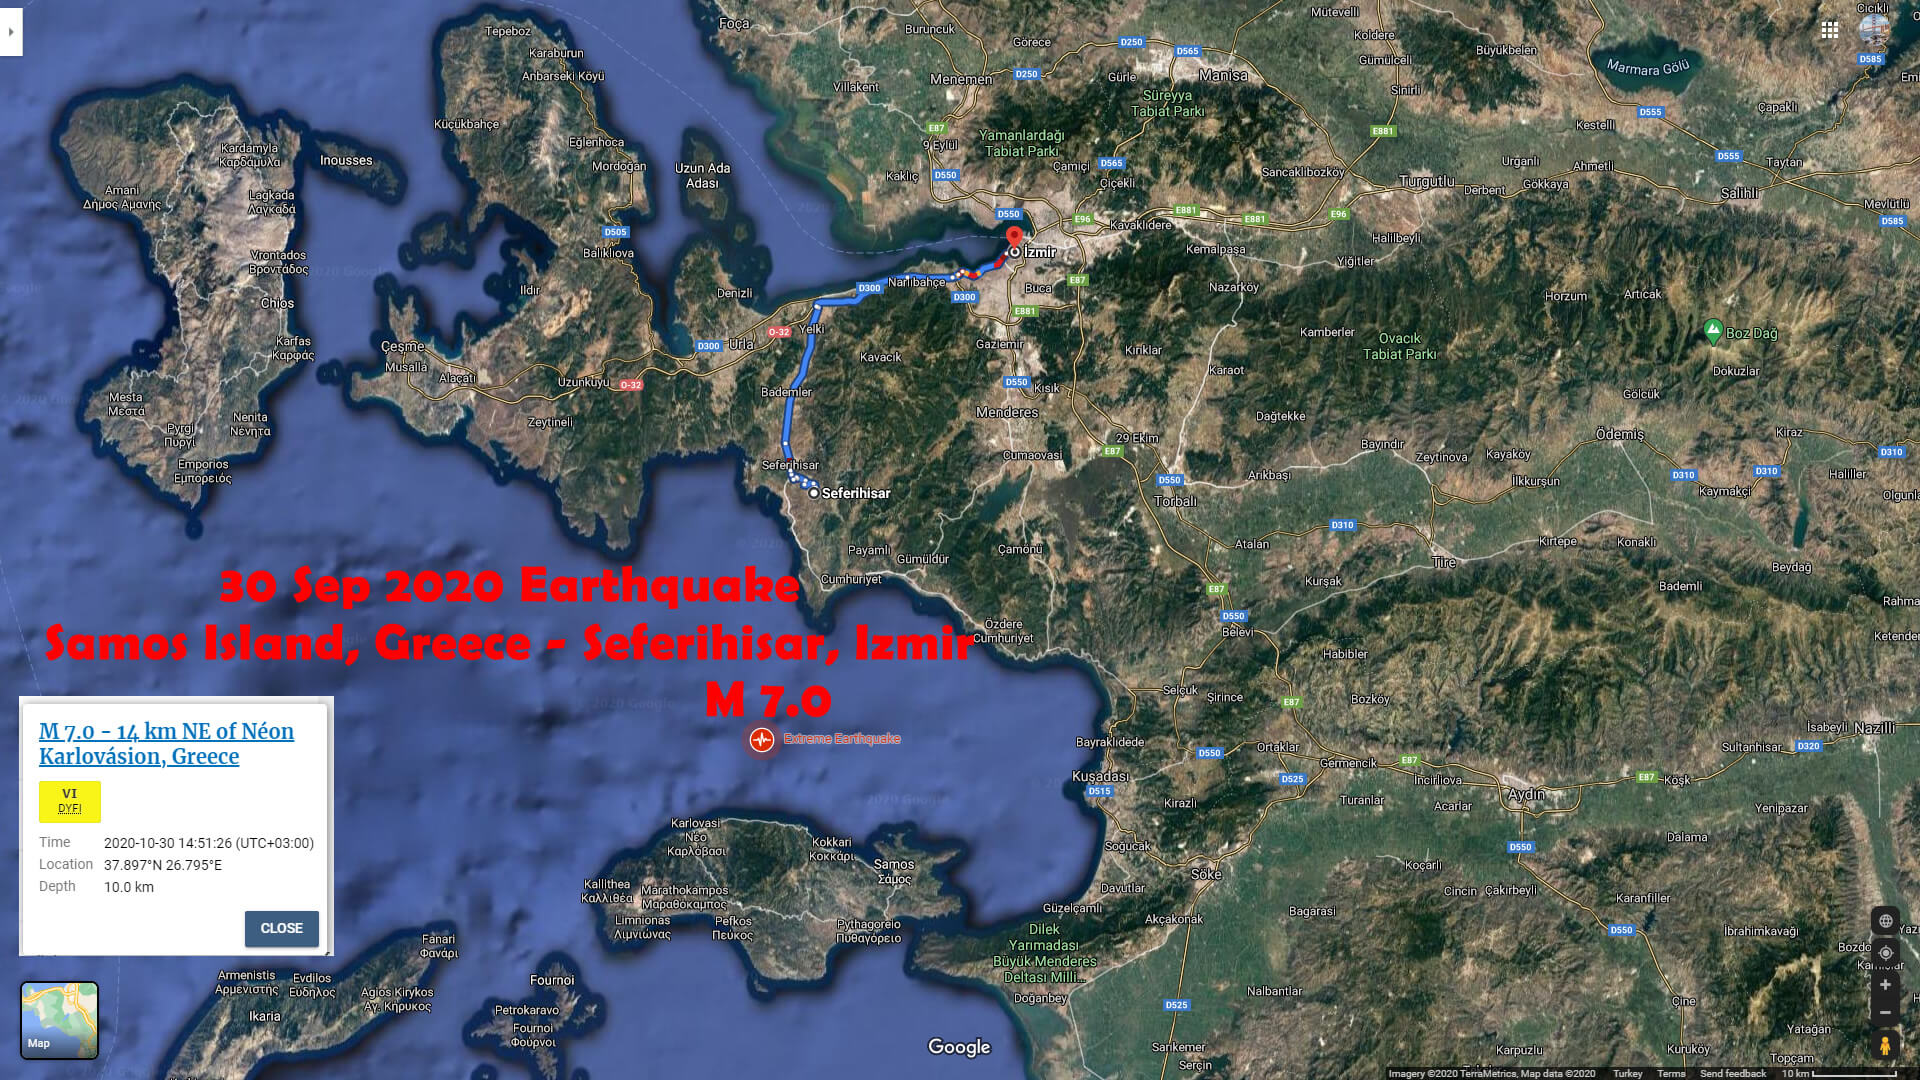 Samos Yunanistan - Seferihisar Izmir - Sep 30 Depremi Uydu Haritasi